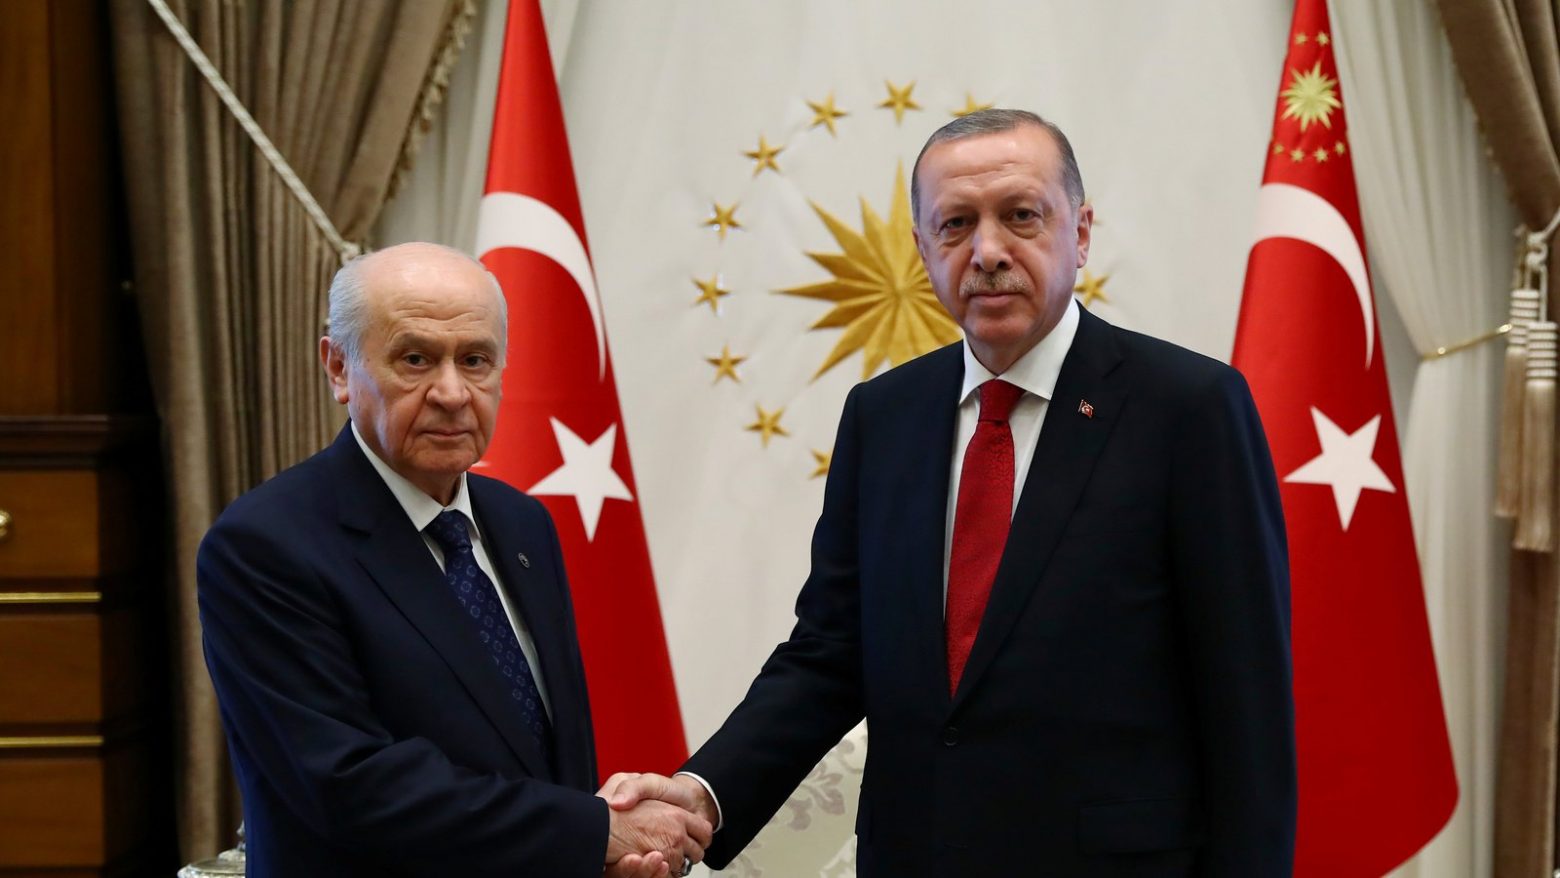 Ερντογάν - Μπαχτσελί: Αναφορές στο «Εθνικό Συμβόλαιο» και σε «τουρκικά κοιτάσματα στην Αν. Μεσόγειο»